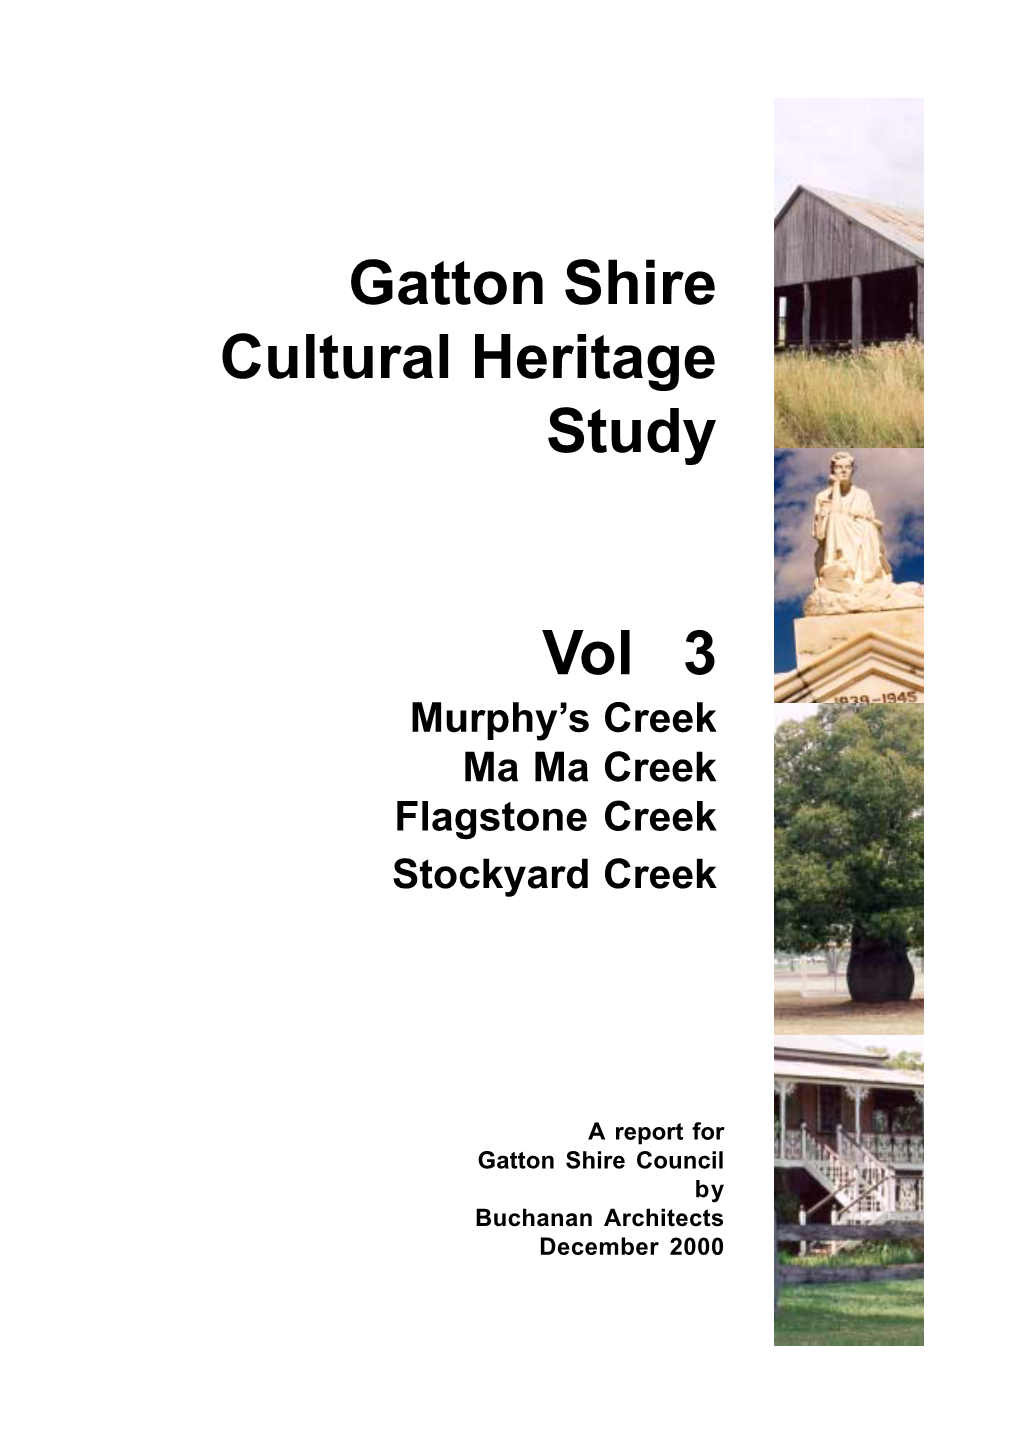 Gatton Shire Cultural Heritage Study 2000